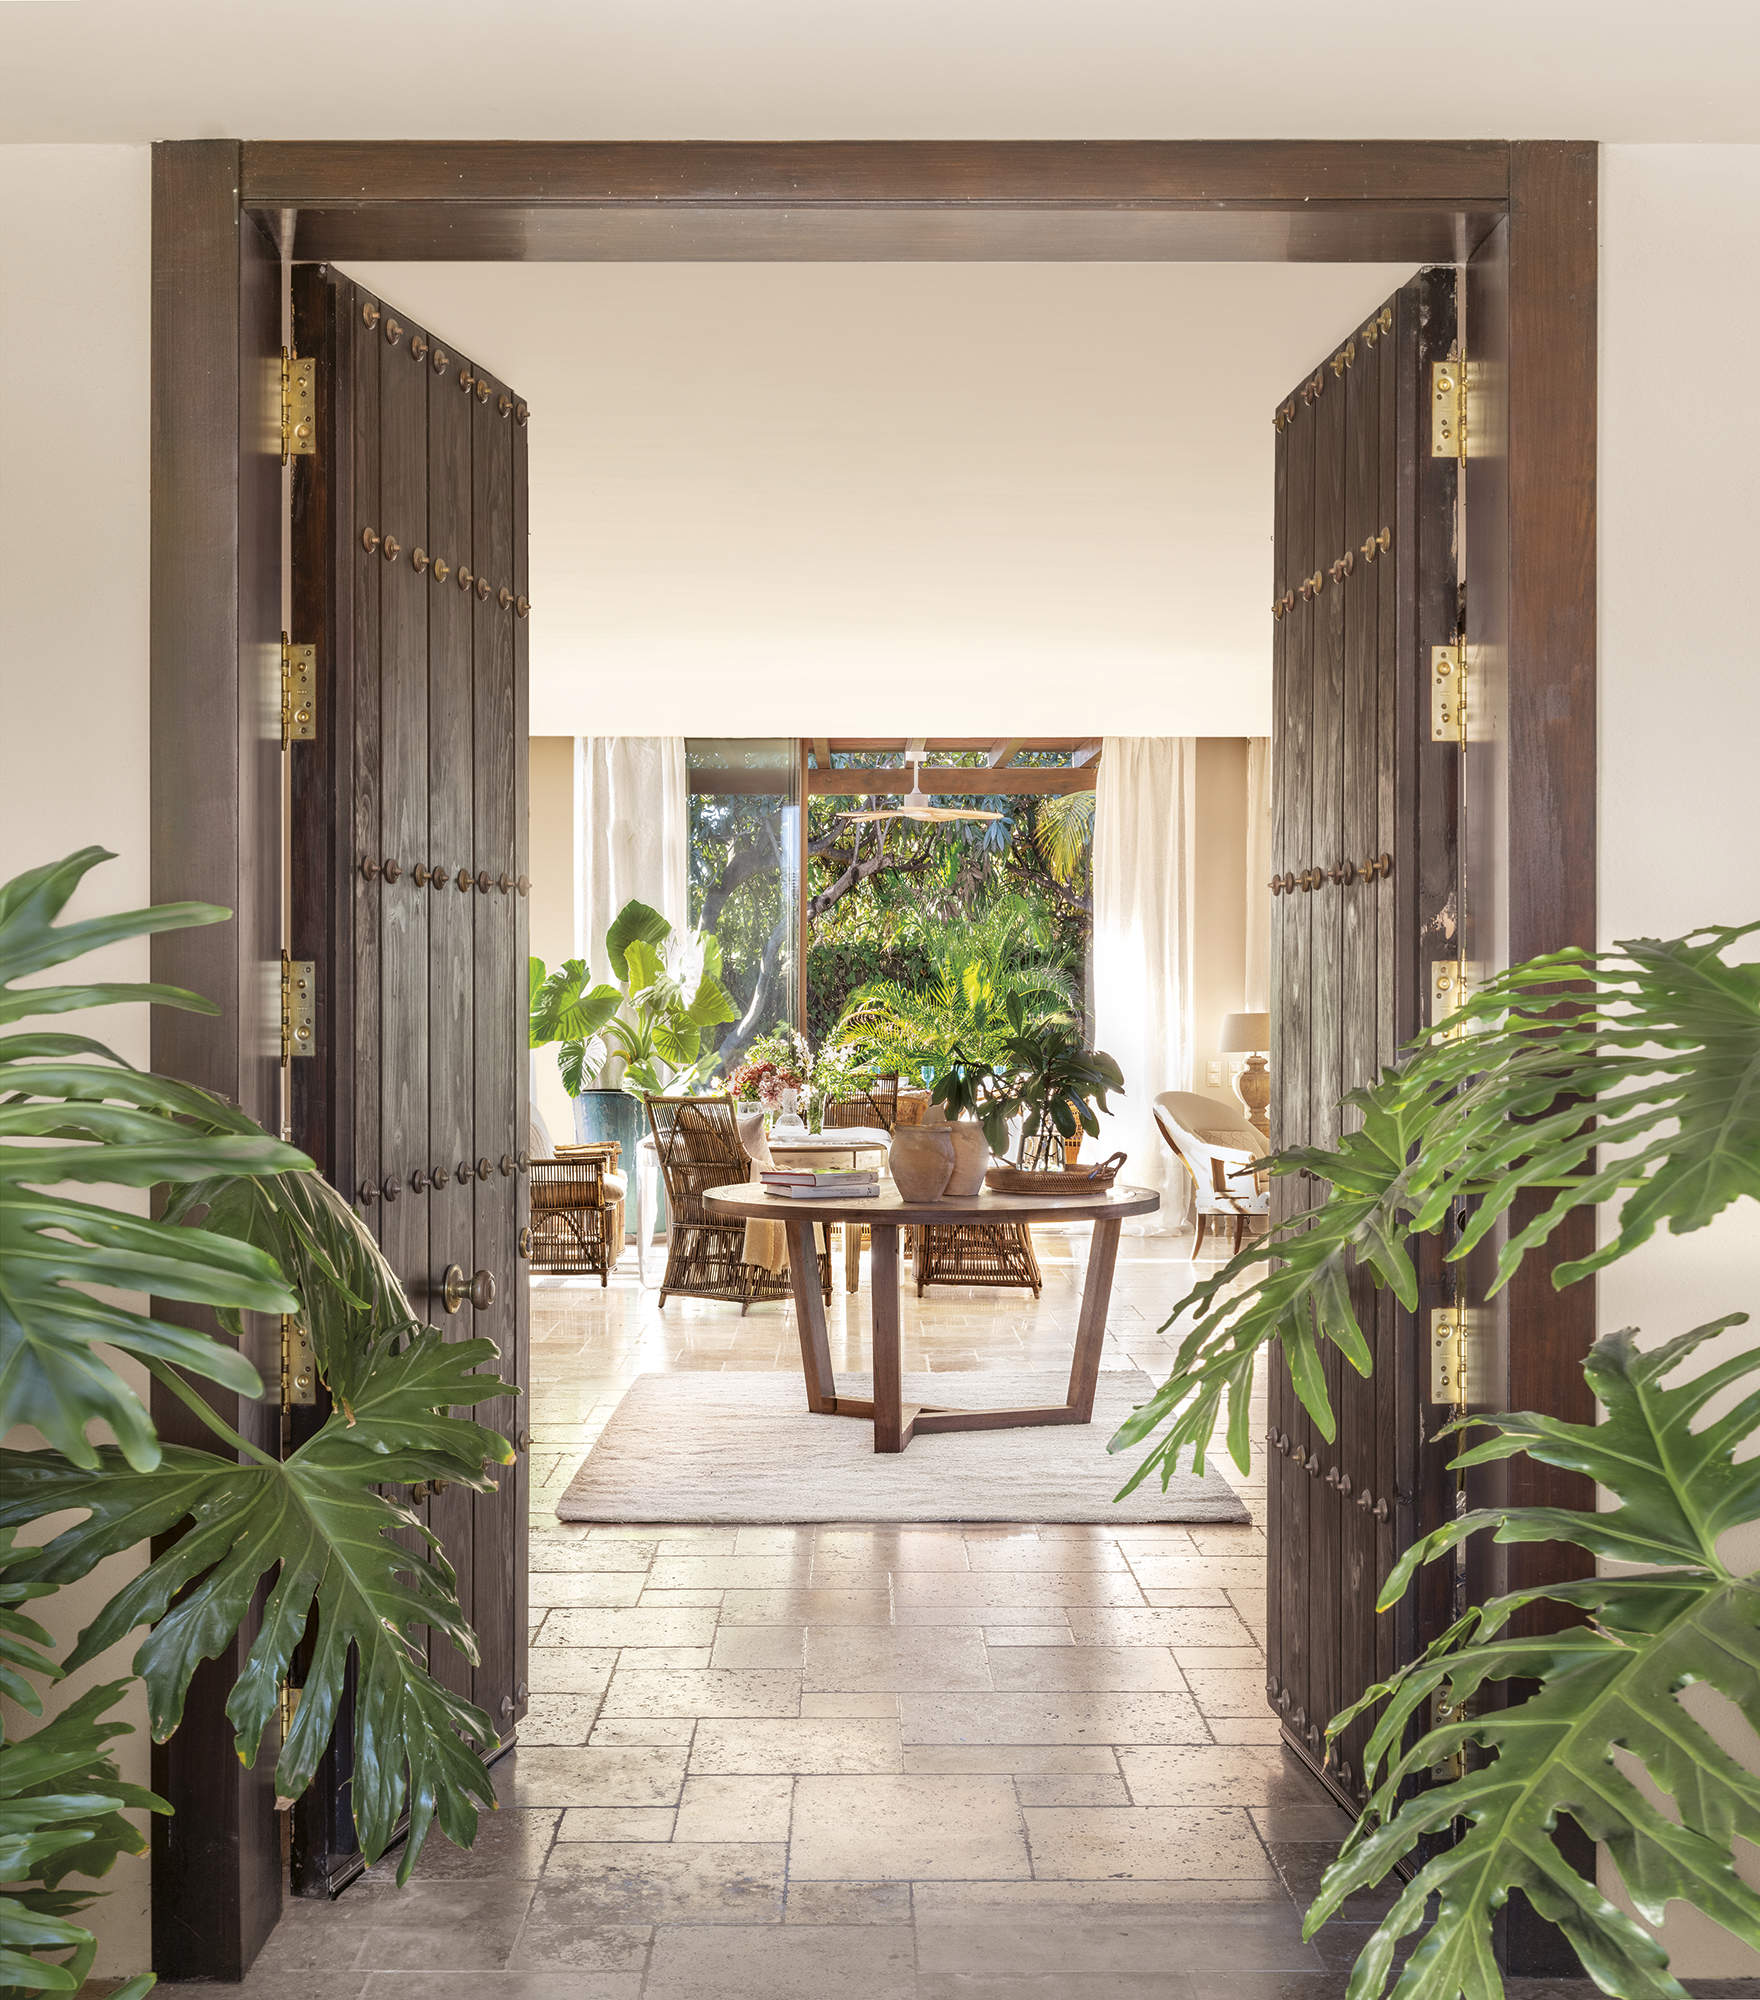 recibidor con puertas de madera con herrajes, pavimento de piedra natural, plantas, alfombra y mesa de madera redonda, porche al fondo